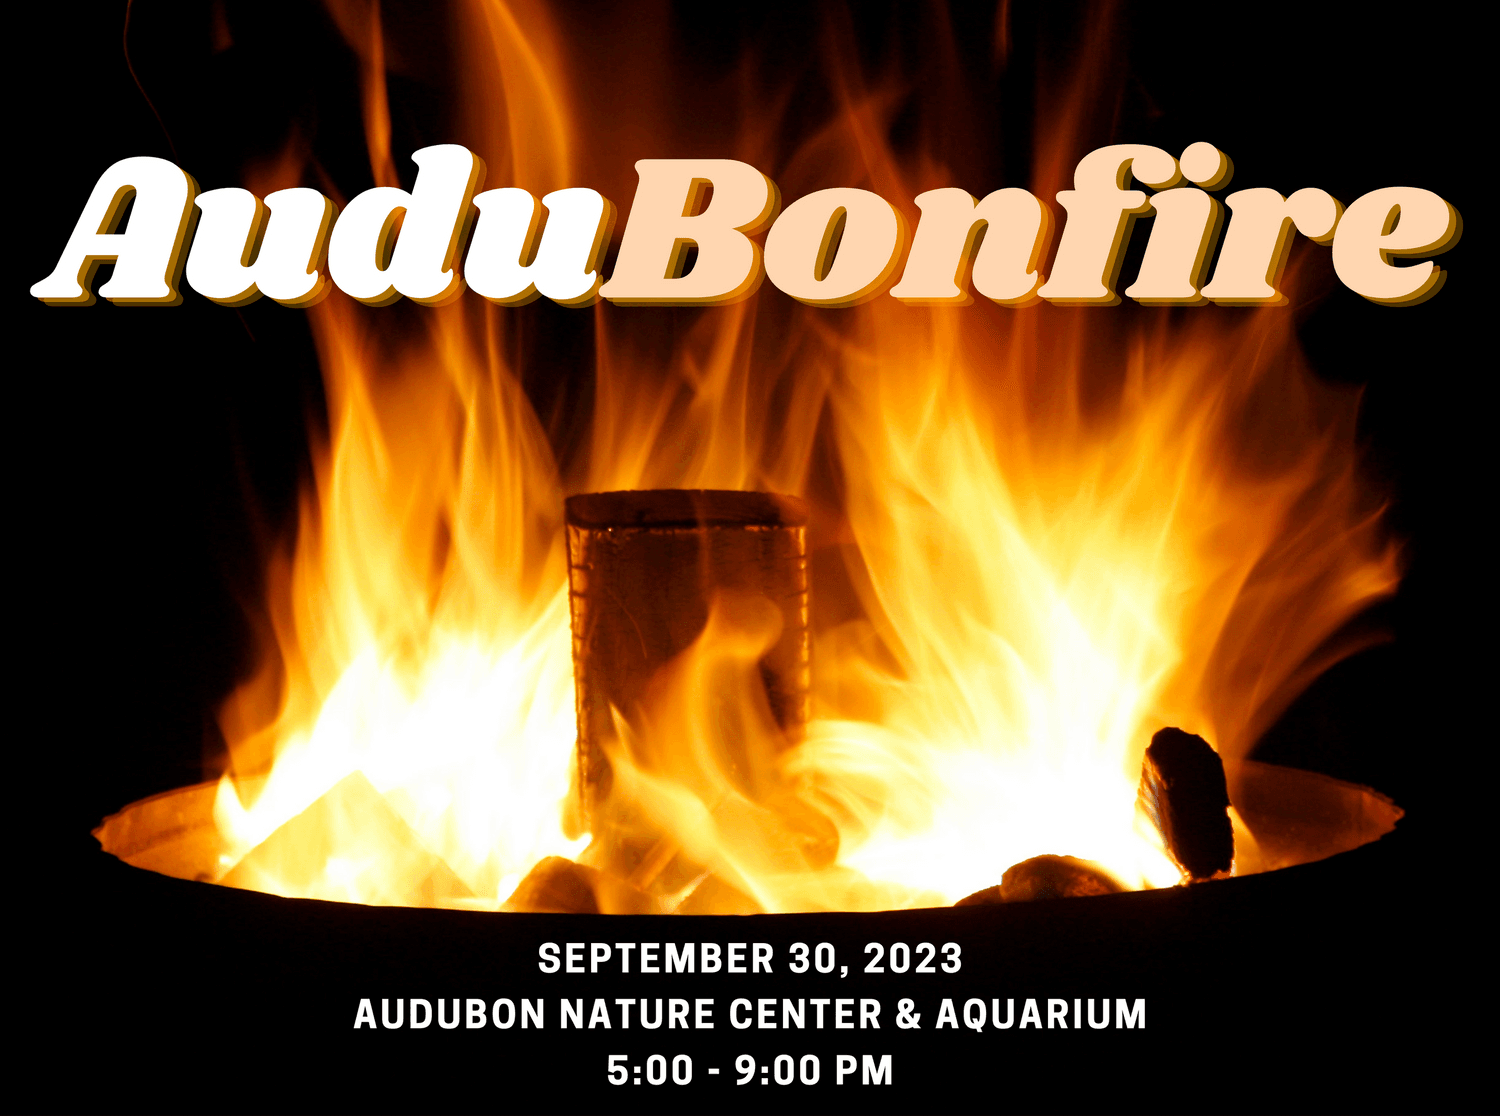 AuduBonfire Member Appreciation Evening: October 14; 5:30-9:00 pm at Caratunk Wildlife Refuge, Seekonk, MA.